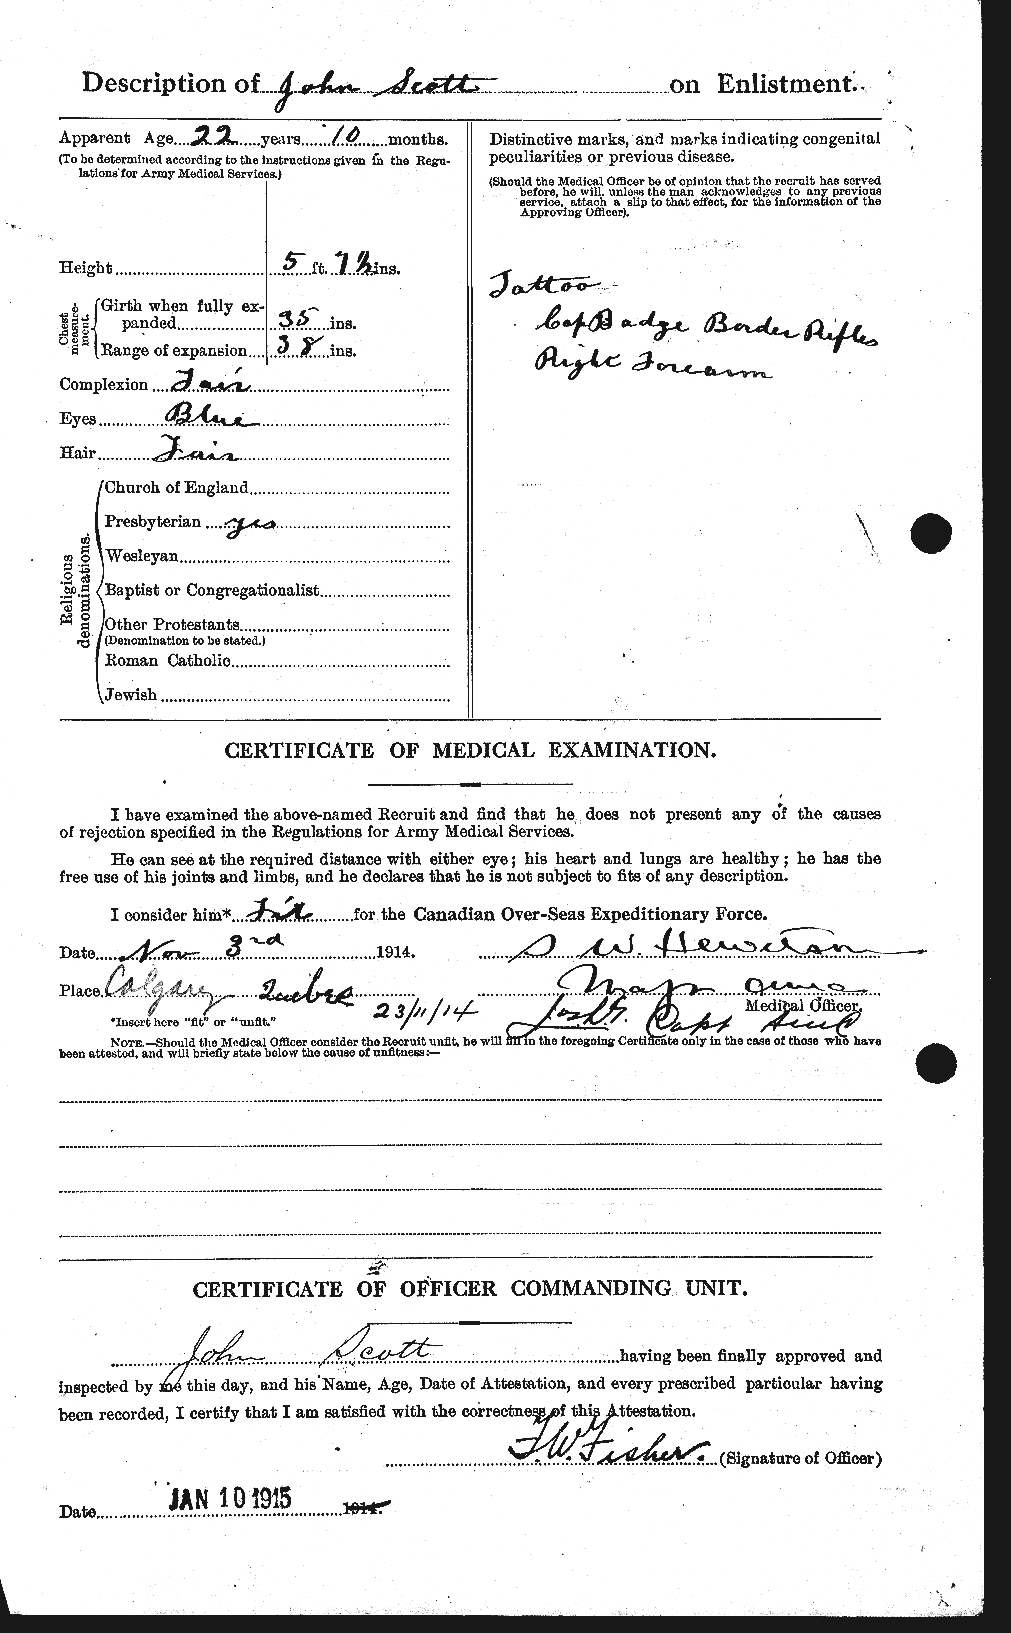 Dossiers du Personnel de la Première Guerre mondiale - CEC 084897b